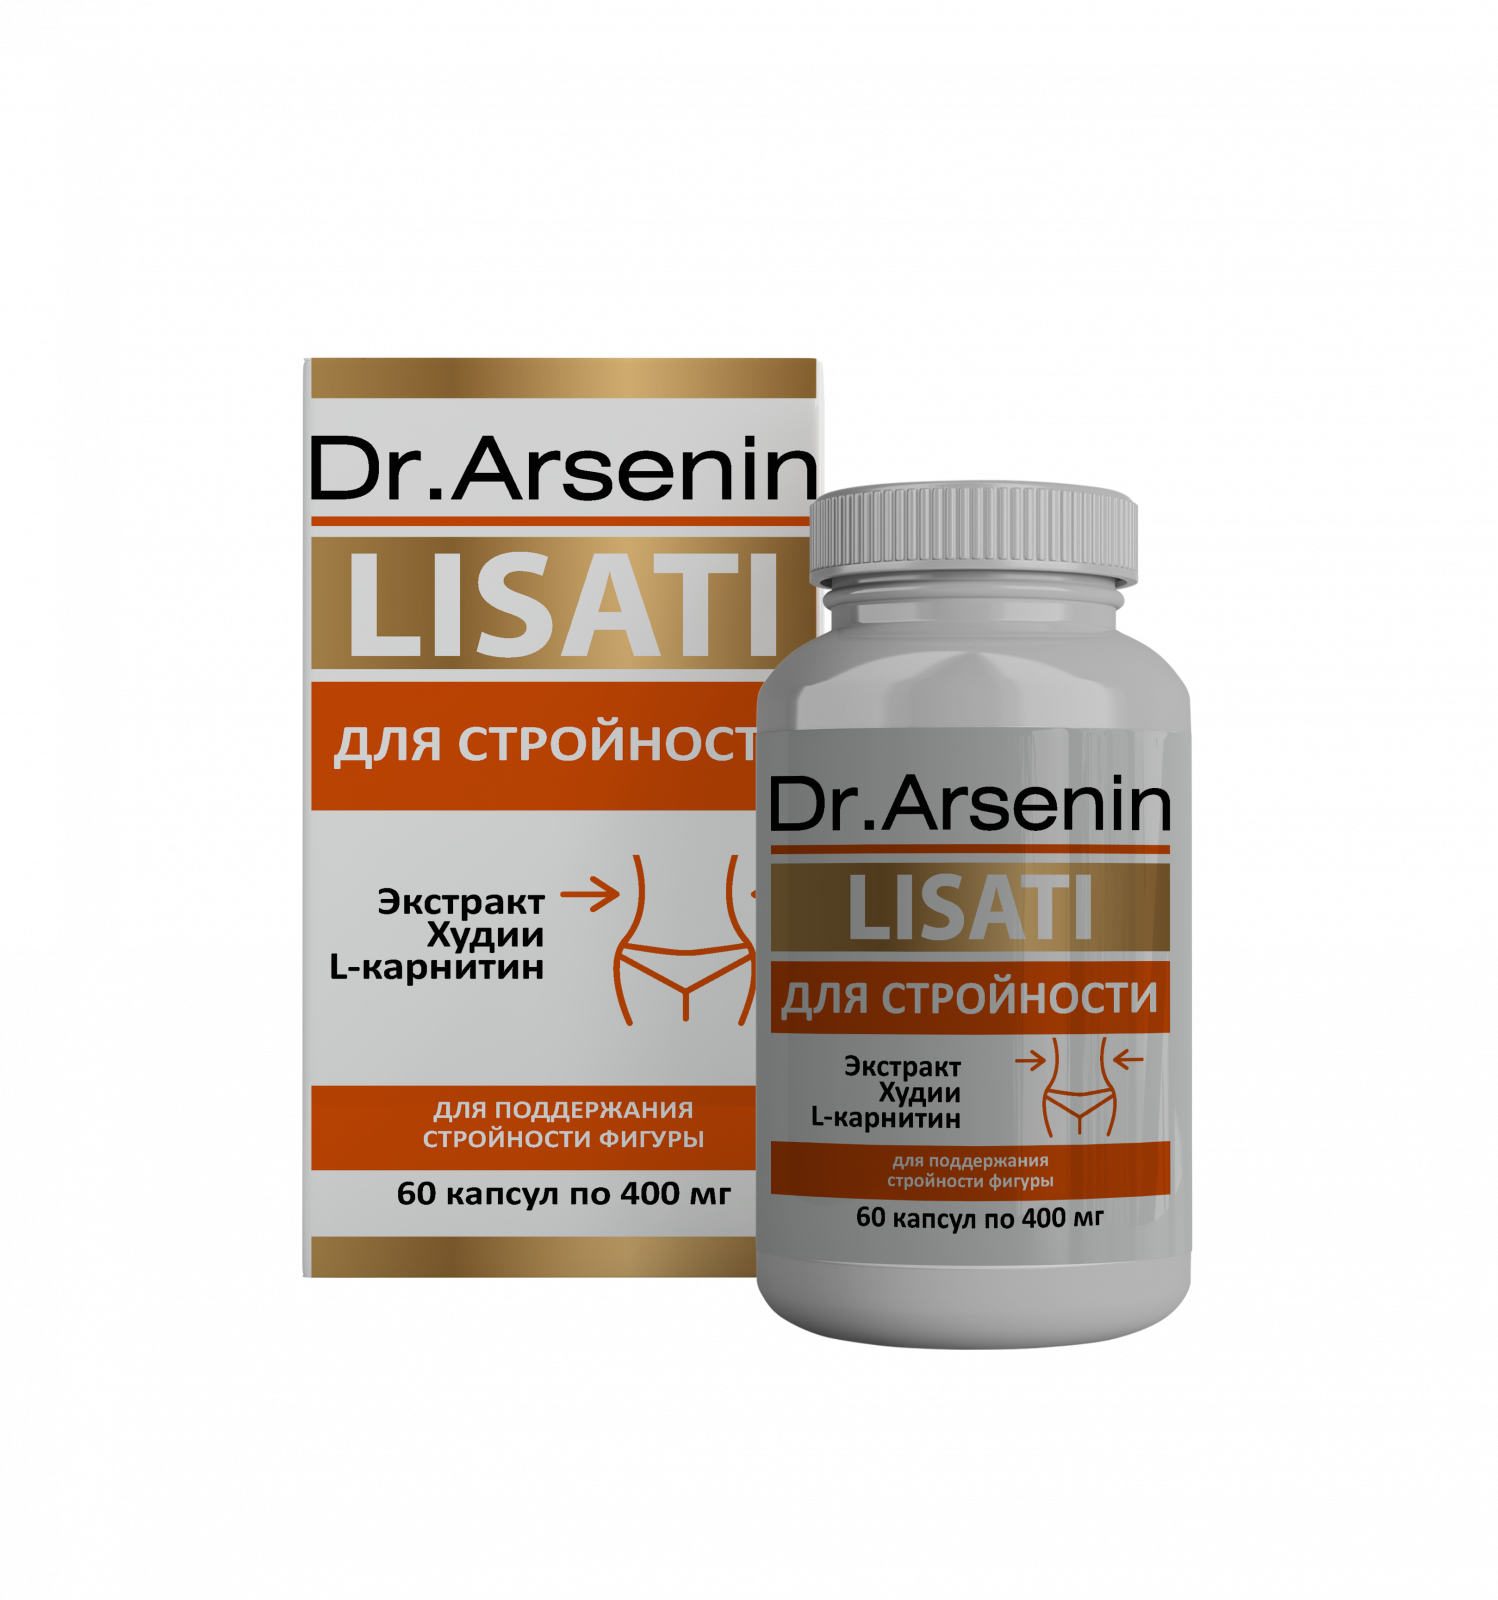 Натуральные средства для снижения веса «"Lisati (Лизаты)" СТРОЙНОСТЬ Dr.Arsenin» - Снижение веса